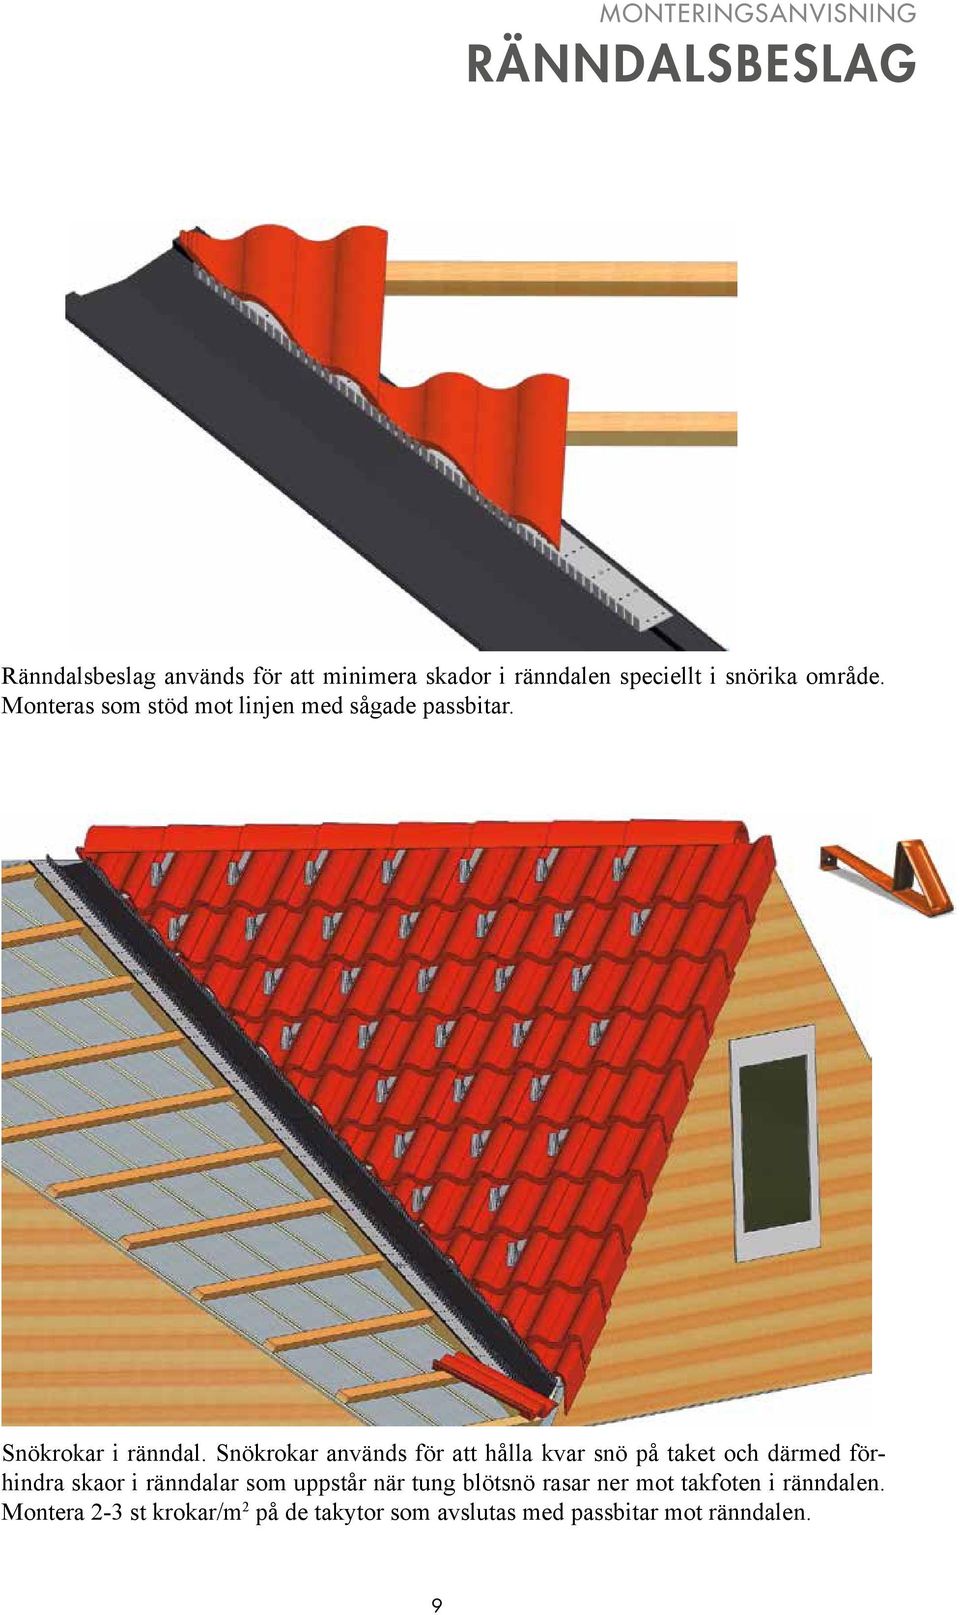 Snökrokar används för att hålla kvar snö på taket och därmed förhindra skaor i ränndalar som uppstår när